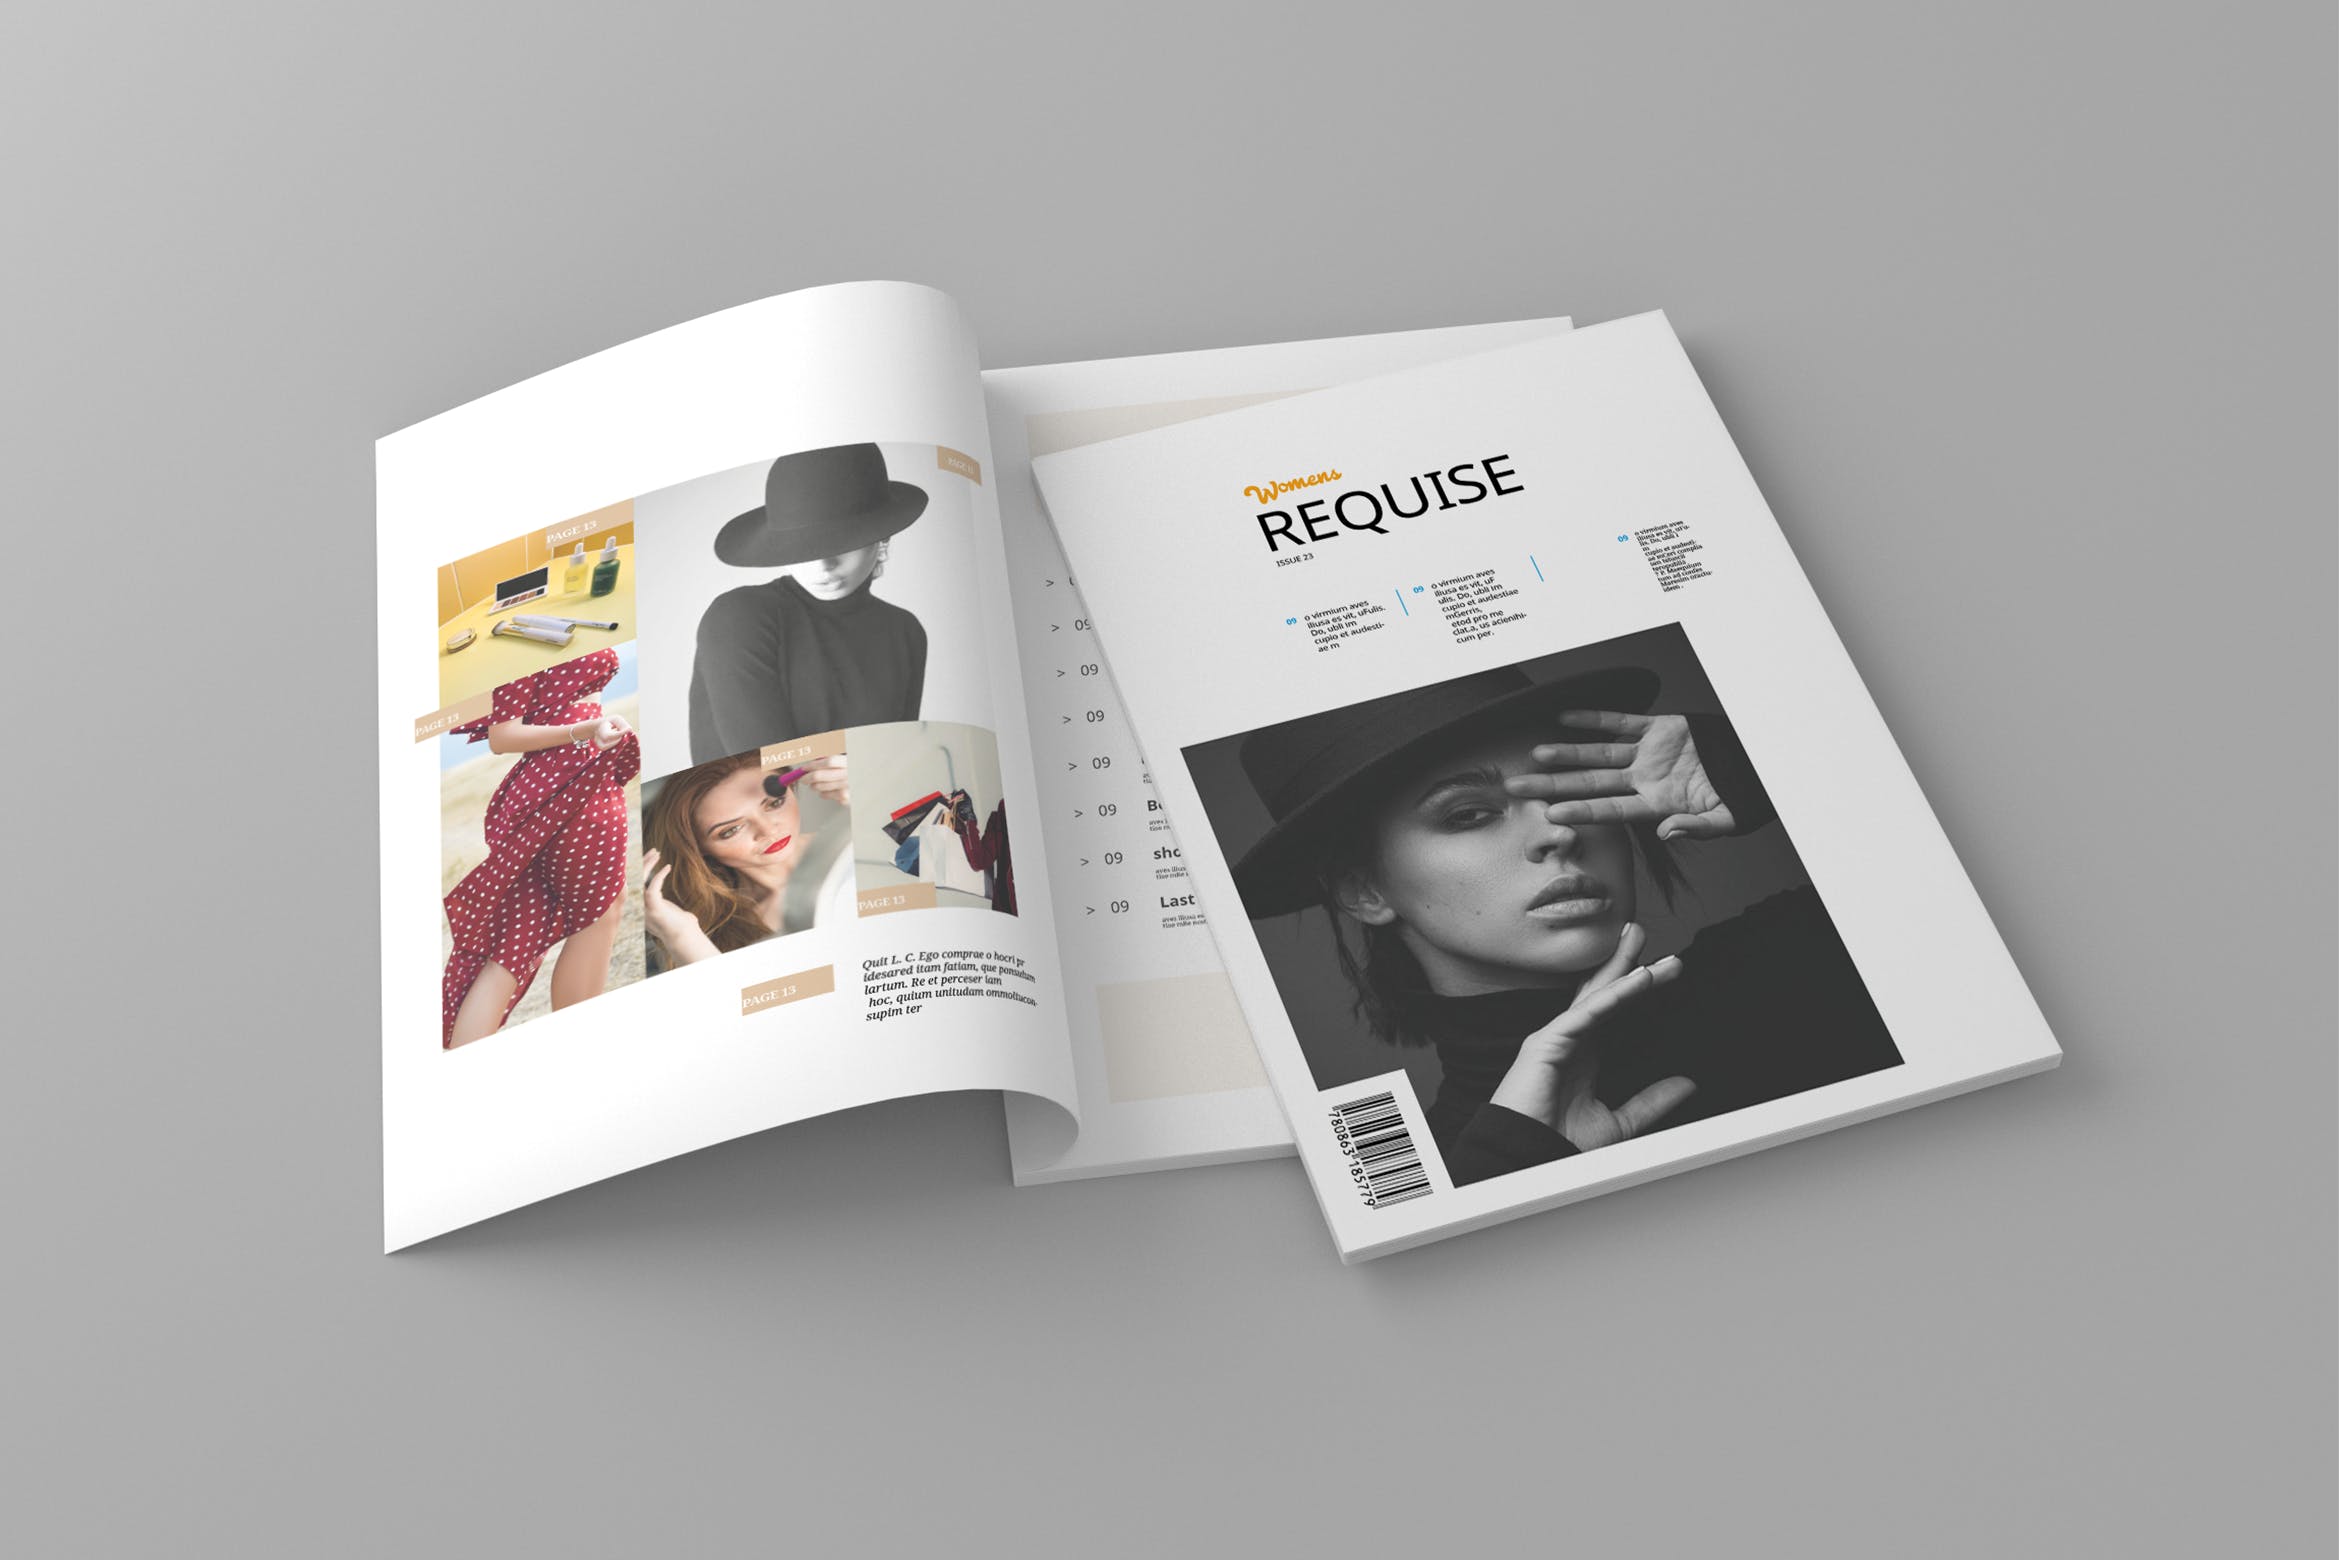 女性时尚主题16图库精选杂志排版设计模板 Requise – Magazine Template插图